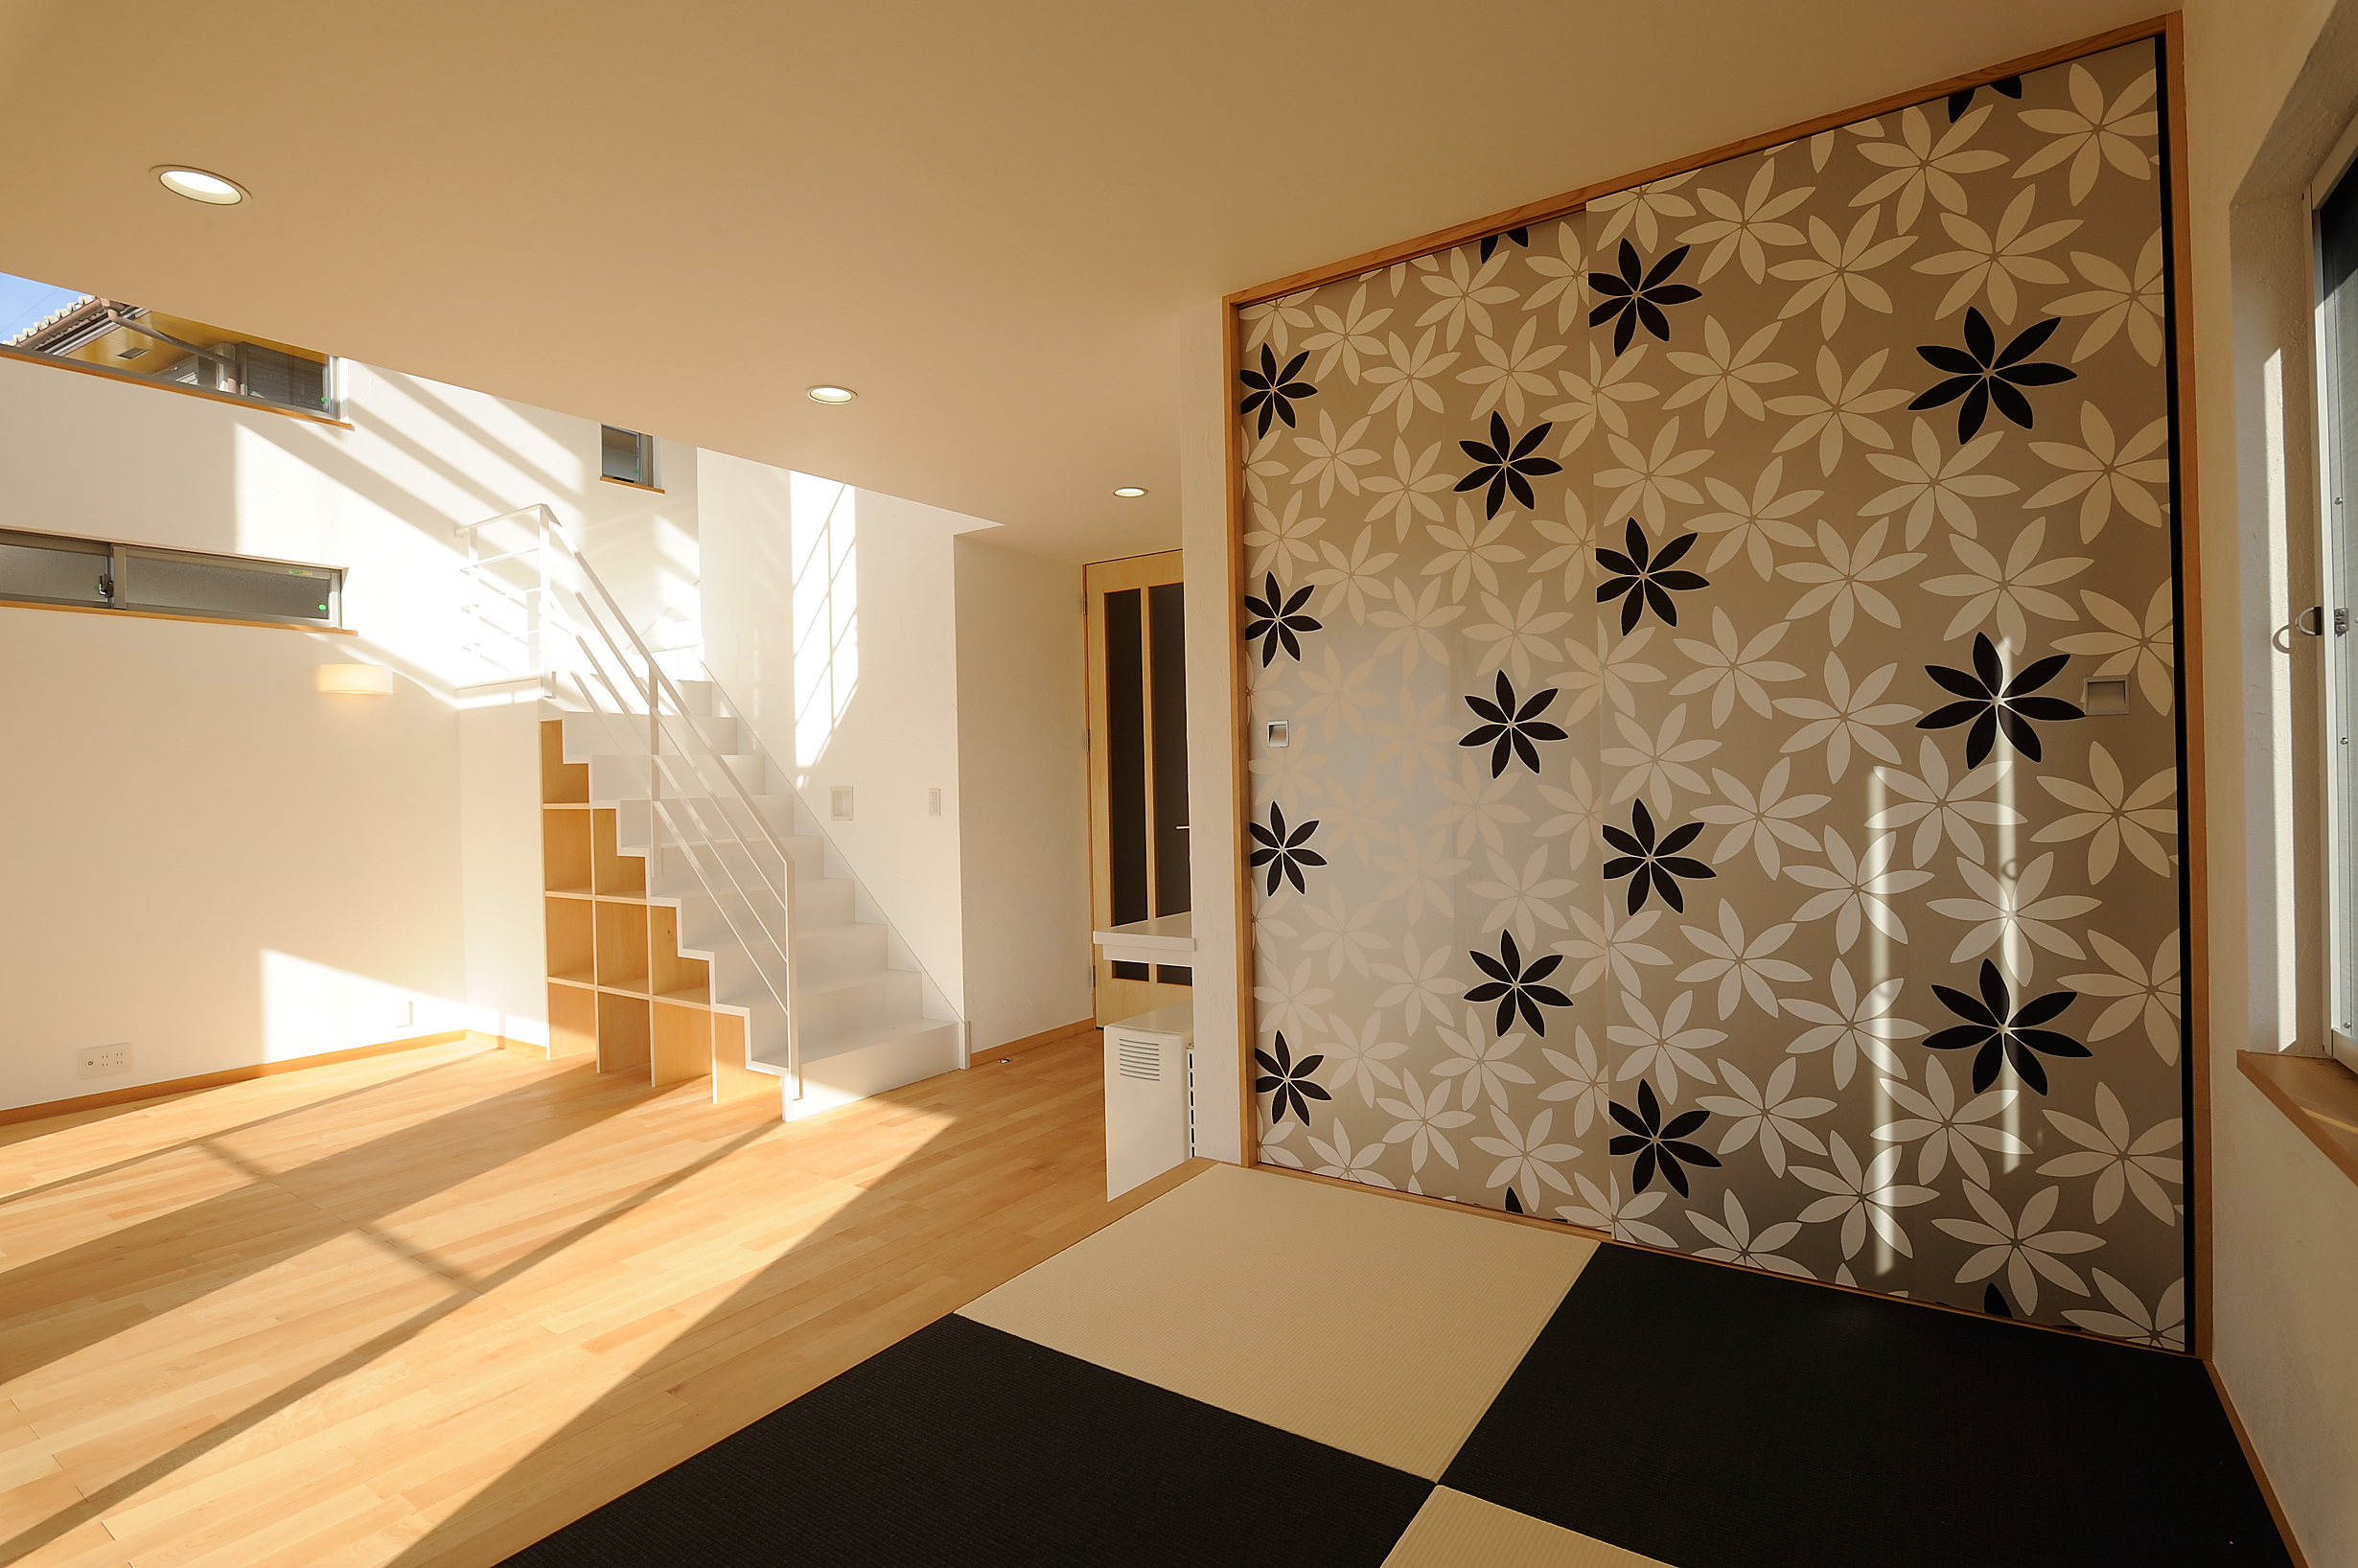 市松の畳が北欧の輸入壁紙とマッチする和の空間からリビングへ